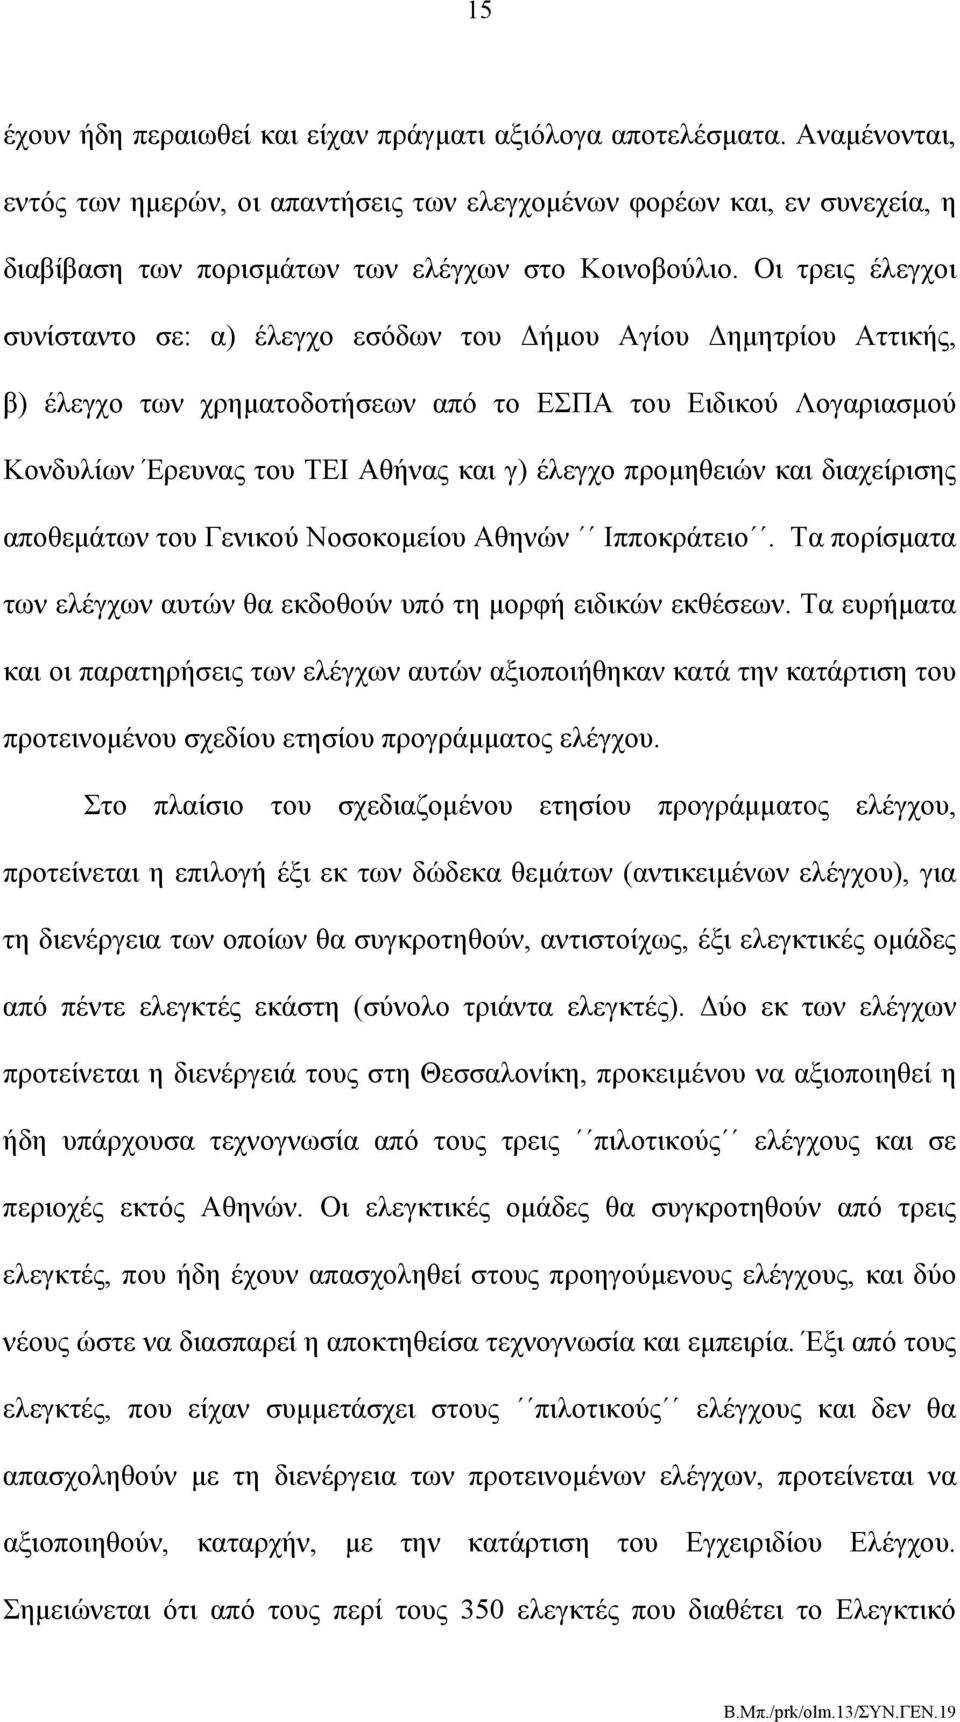 Οι τρεις έλεγχοι συνίσταντο σε: α) έλεγχο εσόδων του Δήμου Αγίου Δημητρίου Αττικής, β) έλεγχο των χρηματοδοτήσεων από το ΕΣΠΑ του Ειδικού Λογαριασμού Κονδυλίων Έρευνας του ΤΕΙ Αθήνας και γ) έλεγχο